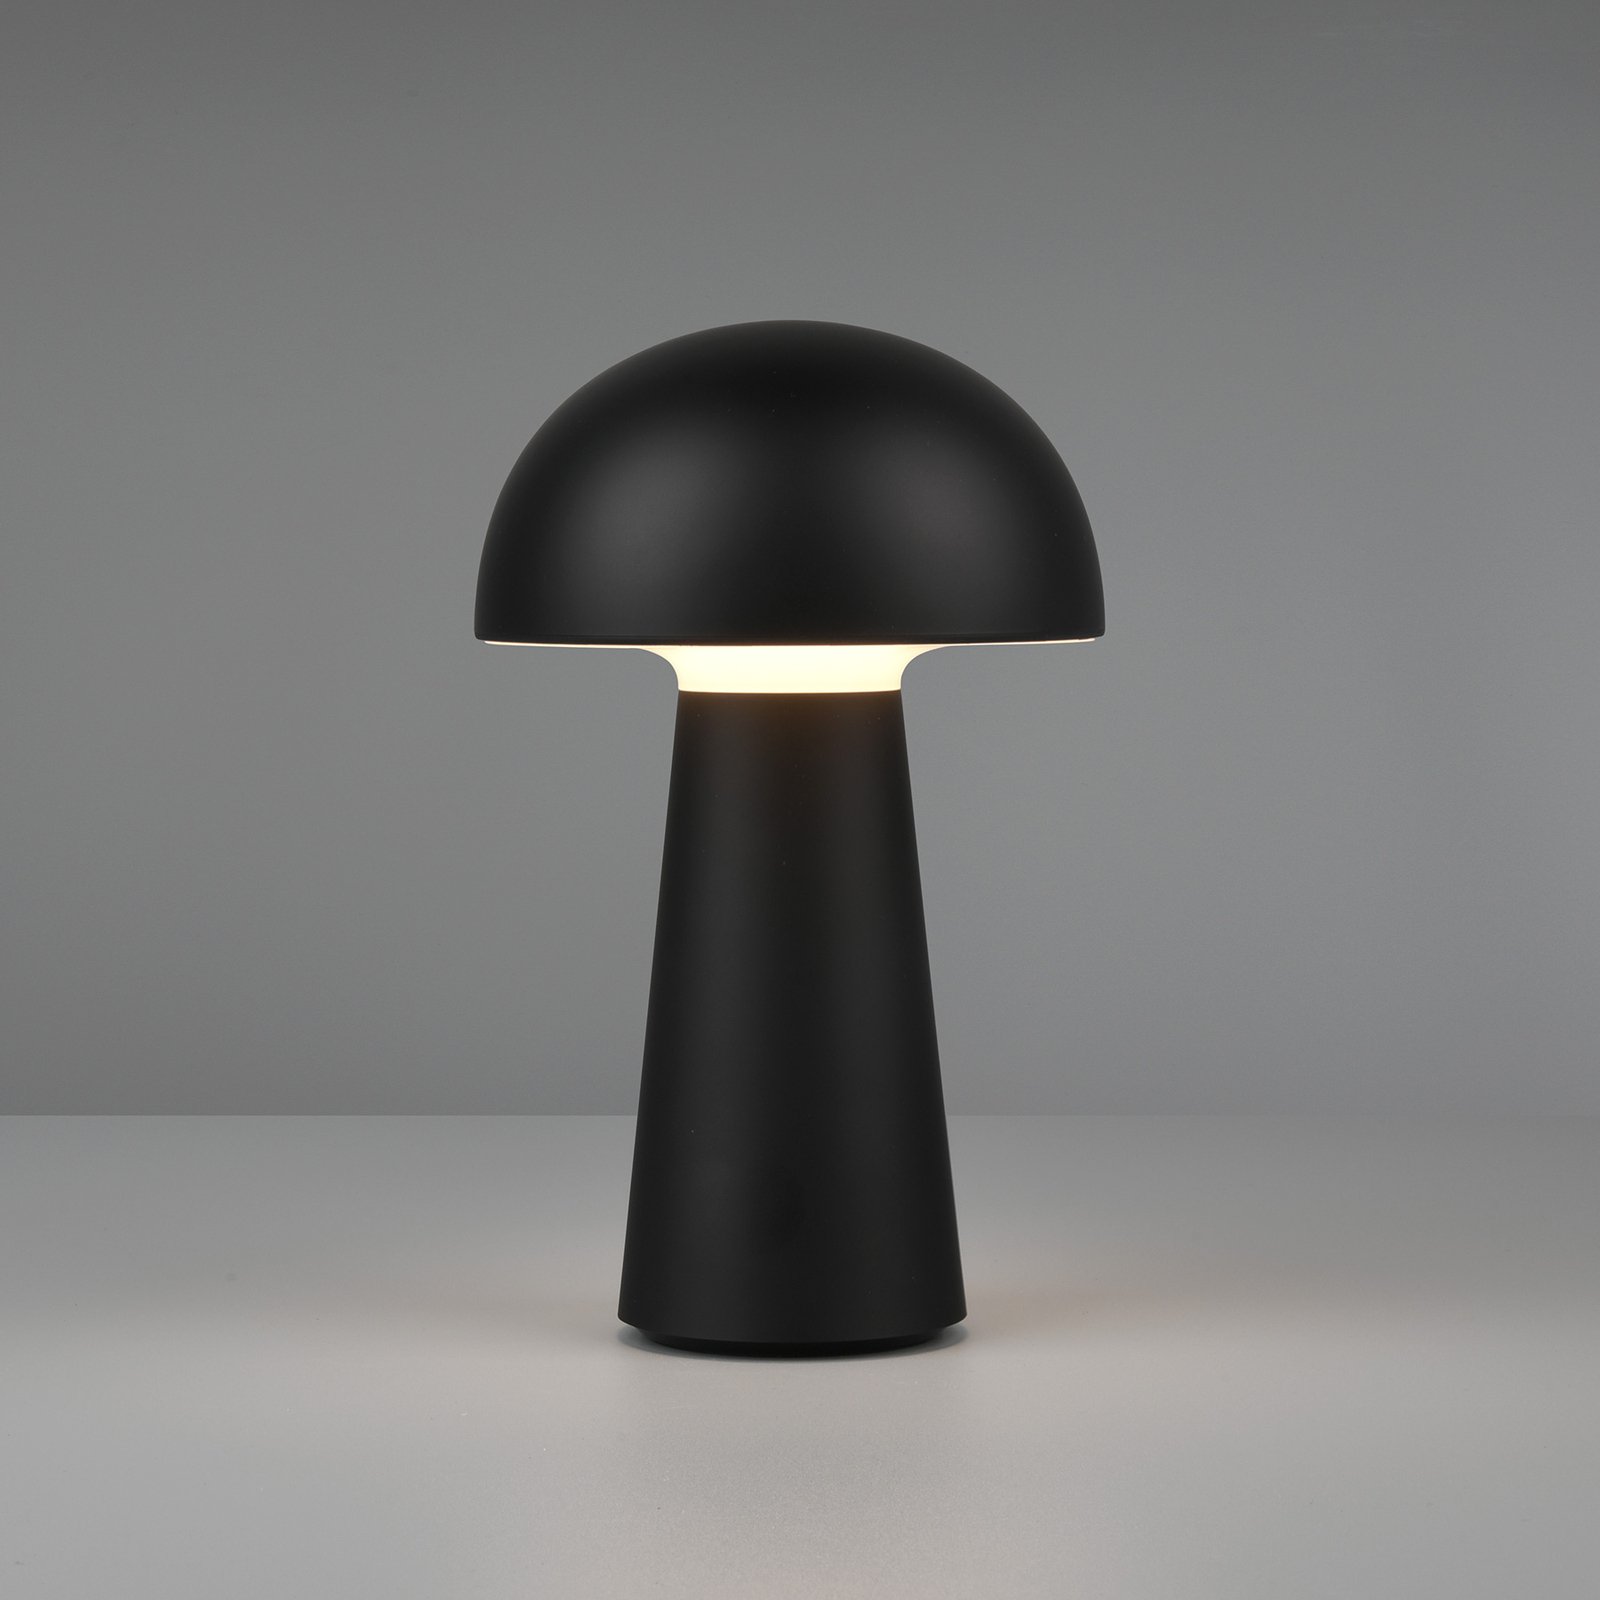 LED table lamp Lennon IP44 battery, dimmer, black